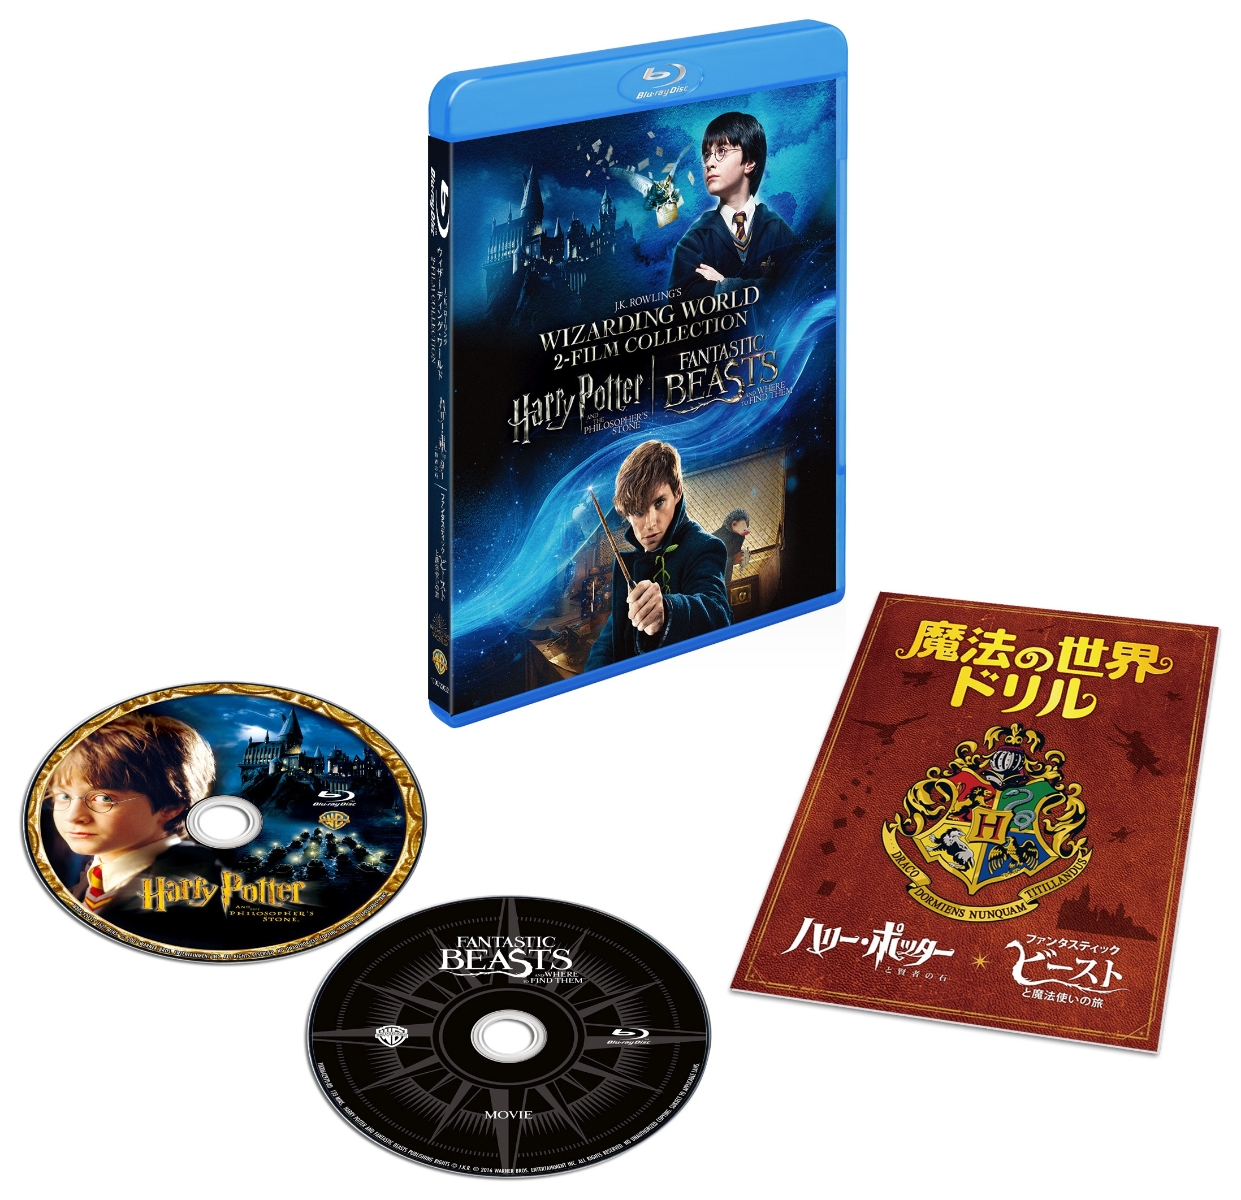 ハリー・ポッターと賢者の石 & ファンタスティック・ビーストと魔法使いの旅 魔法の世界 入学セット【Blu-ray】画像